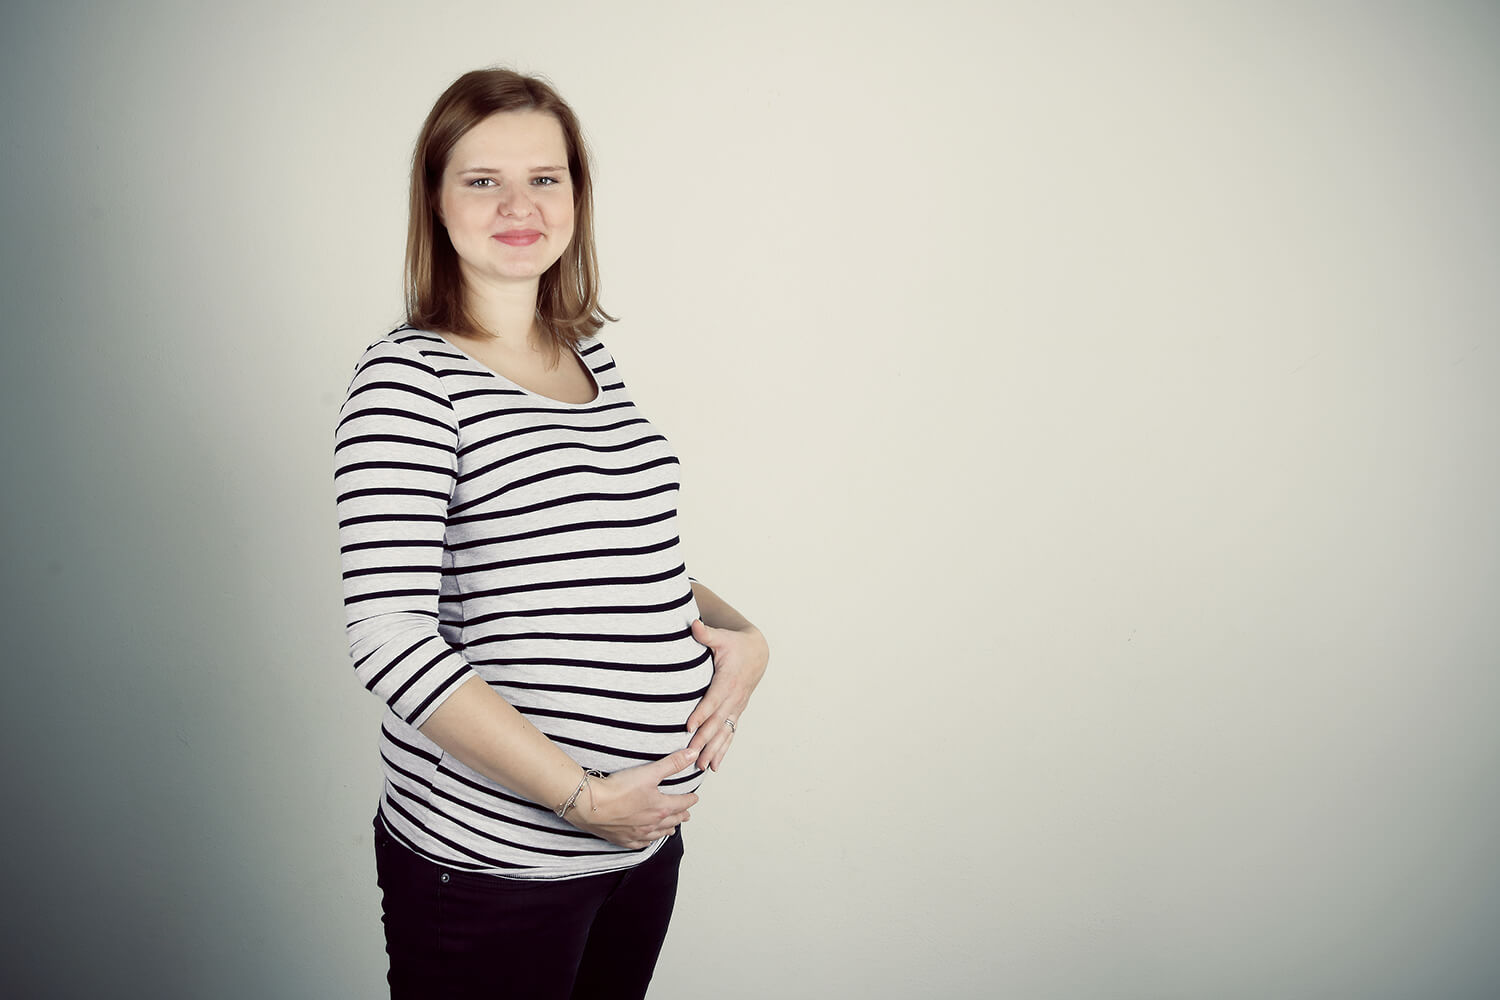 těhotenská fotografie v pruhovaném triku a černých kalhotách na světlém pozadí